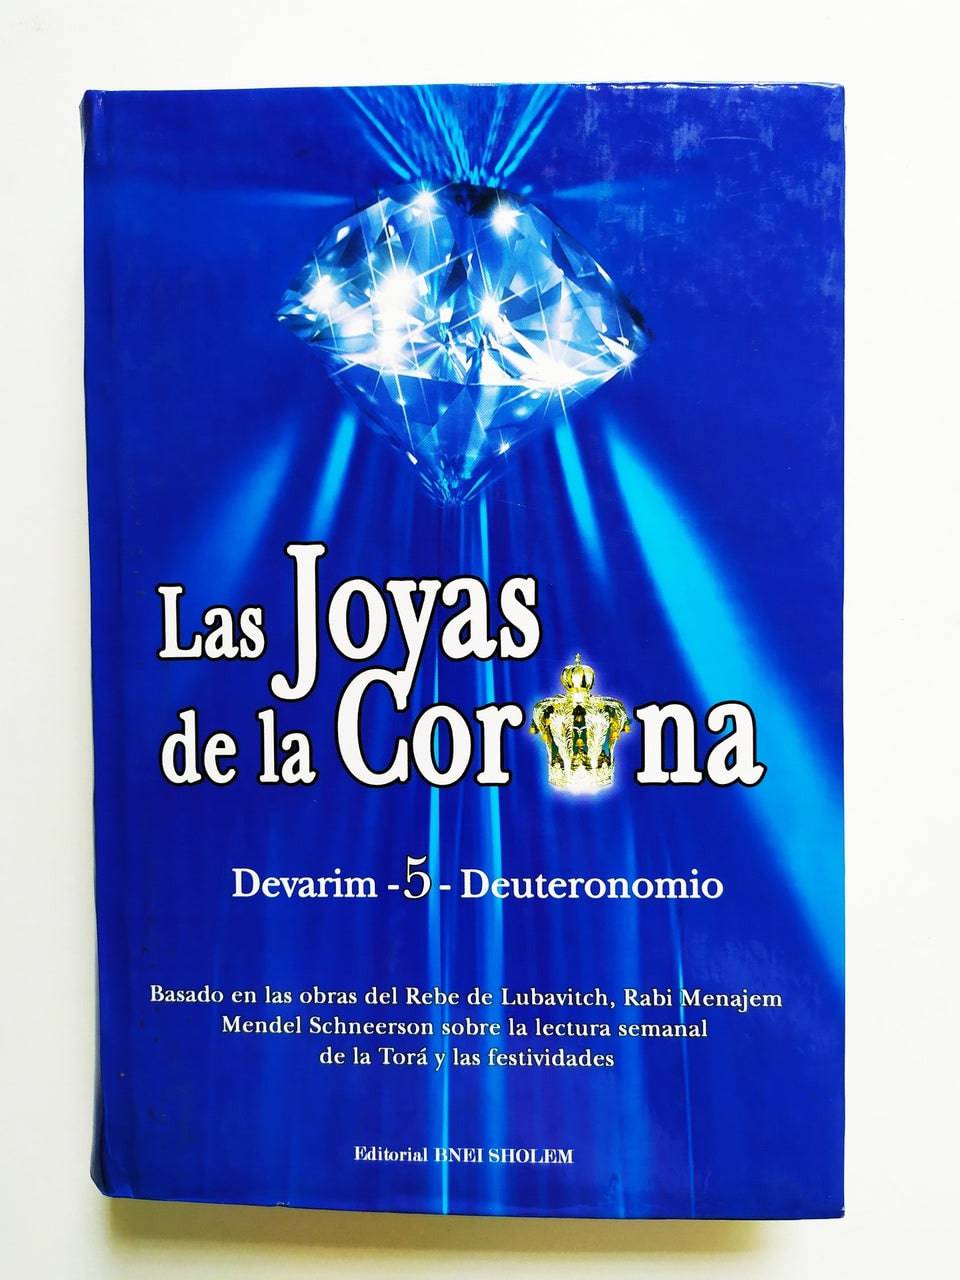 Las Joyas De La Corona, Devarim Tomo 5 - Libreria Jerusalem Centro